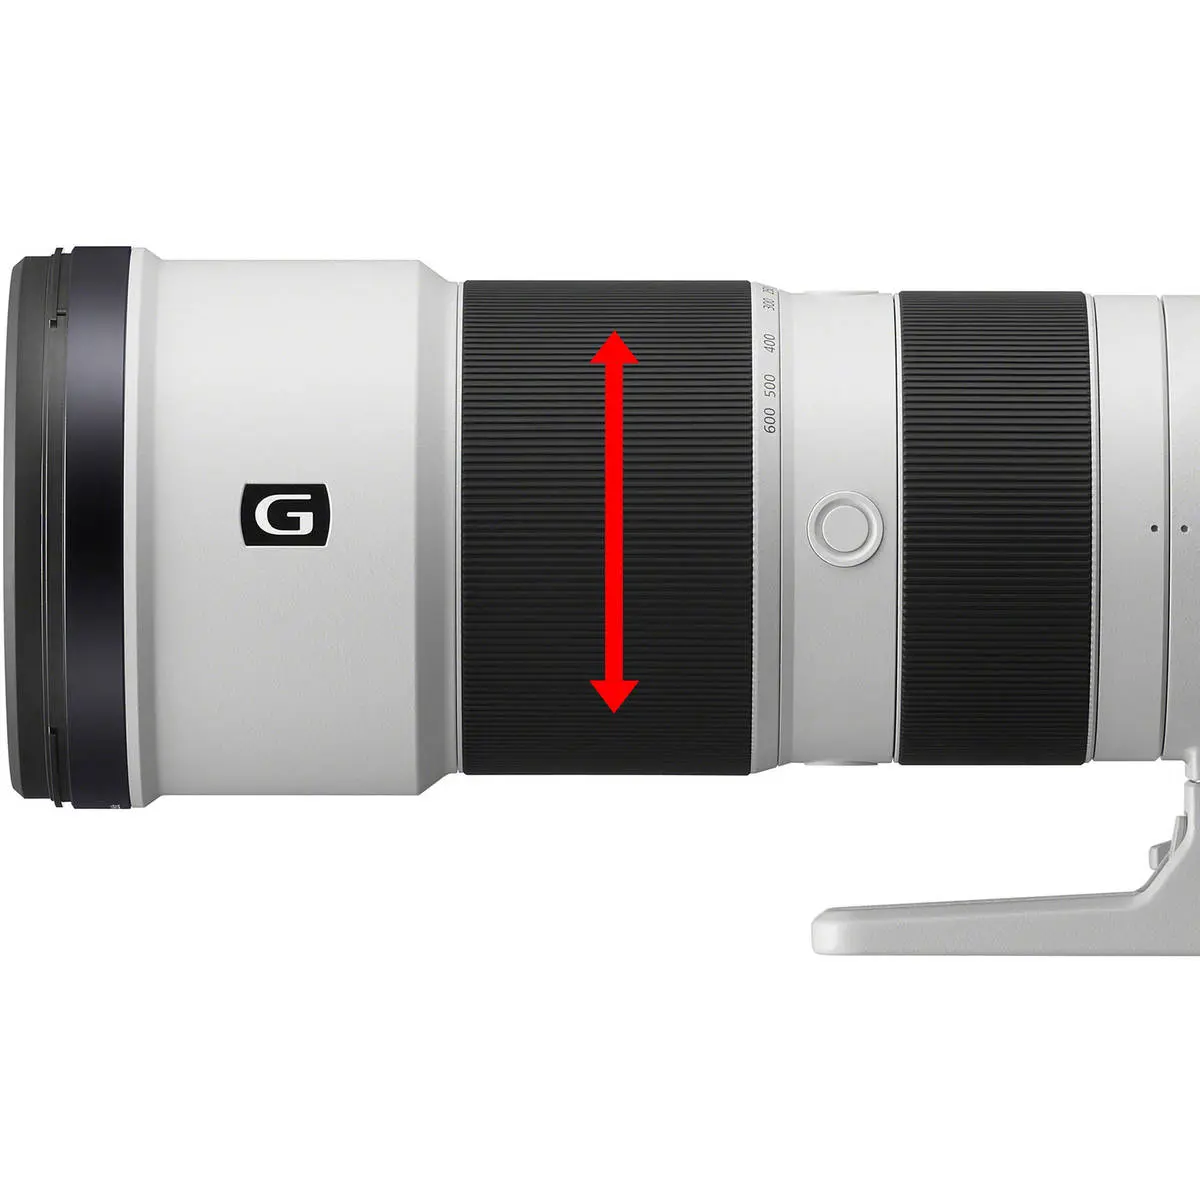 7. Sony FE 200-600mm f/5.6-6.3 G OSS Telephoto Lens E-Mount